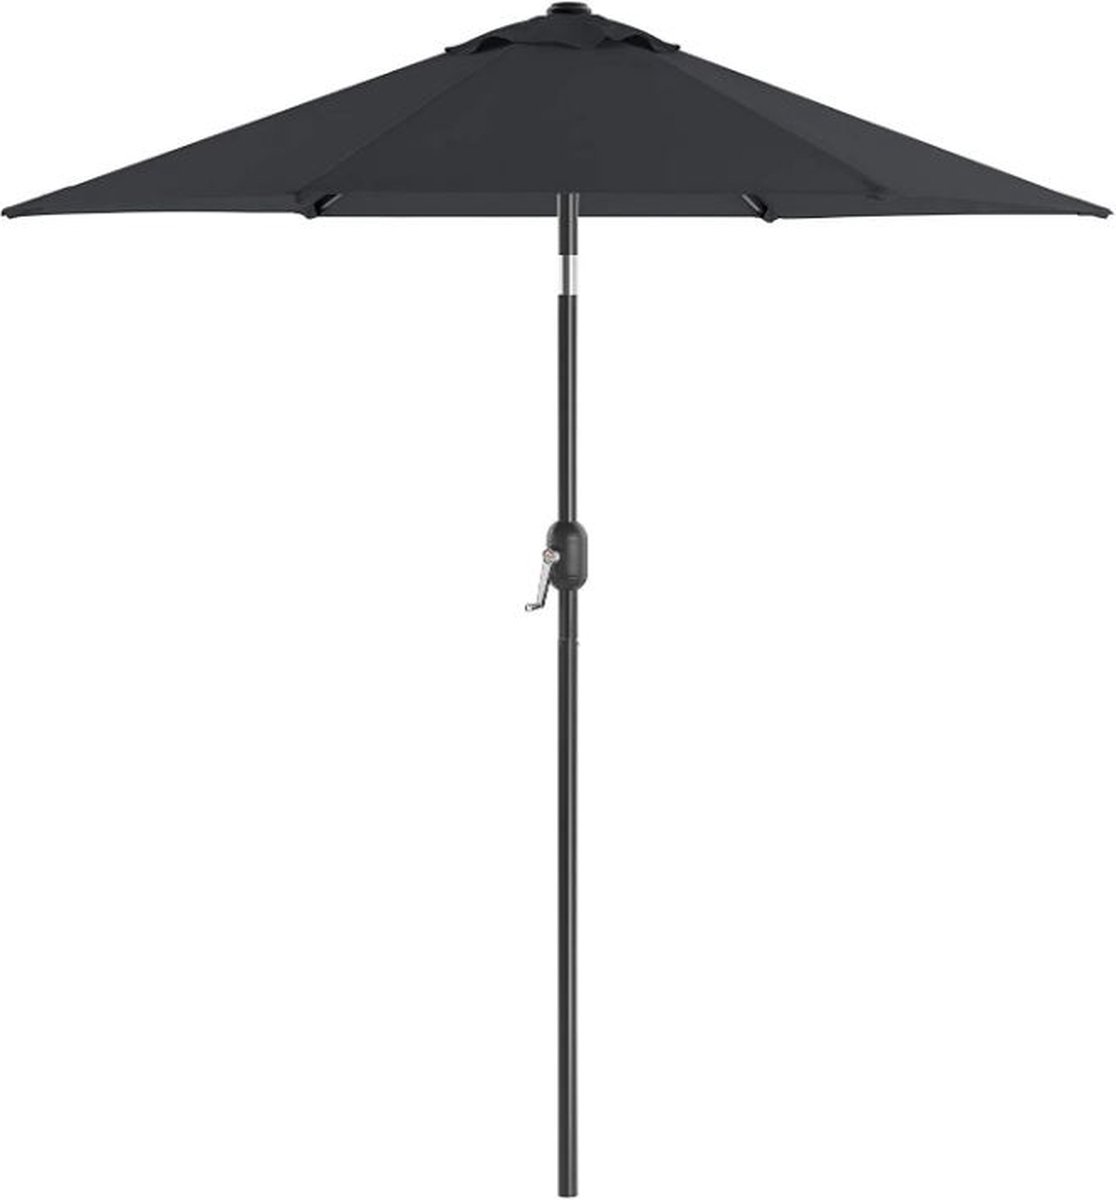 MIRA Home - Tuin parasol paraplu - Zonnescherm met UPF 50+ bescherming - Kantelbaar - 125,2 x 14 x 13 cm